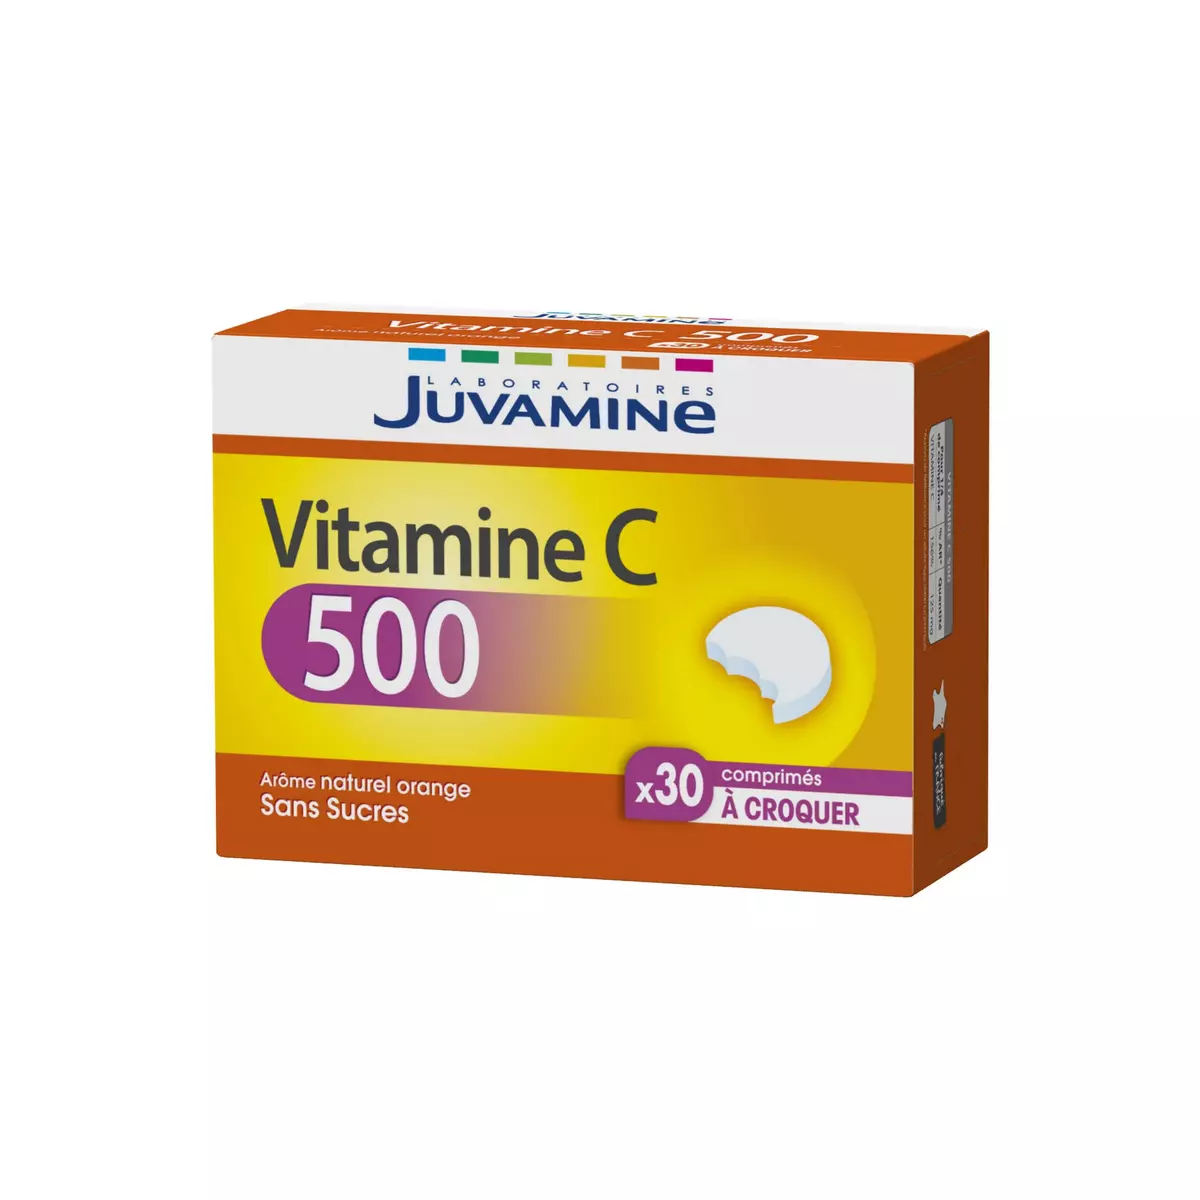 JUVAMINE Complément vitamine C 500 sans sucre arôme naturel orange en comprimés 30 comprimés 64g